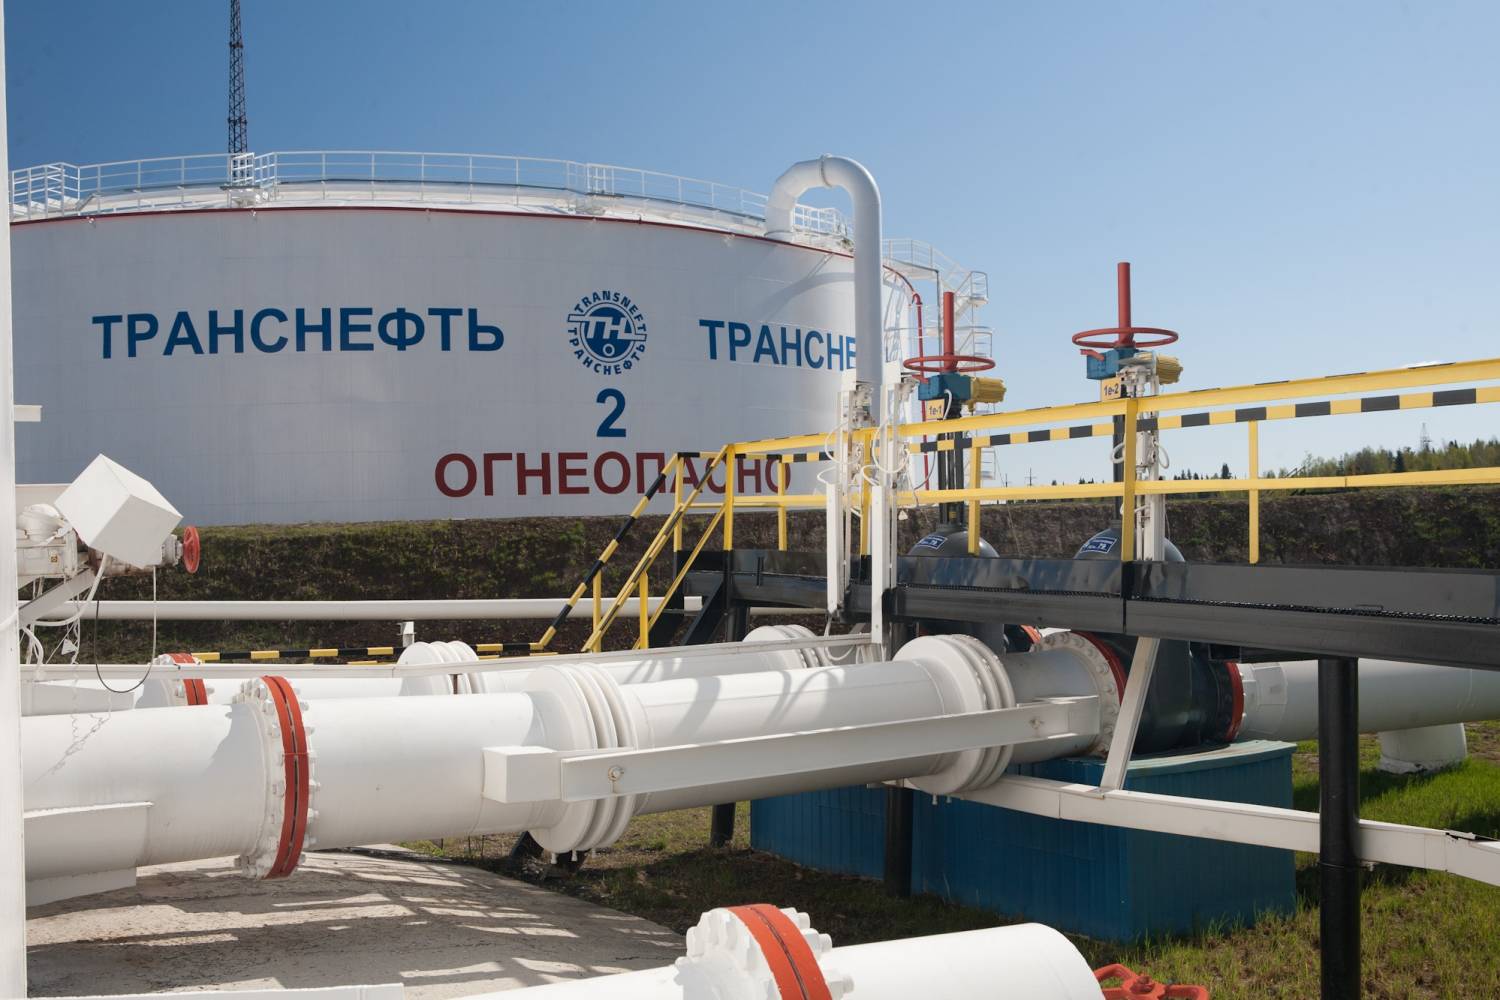 Украина оспорит право собственности на трубопровод «Транснефти»